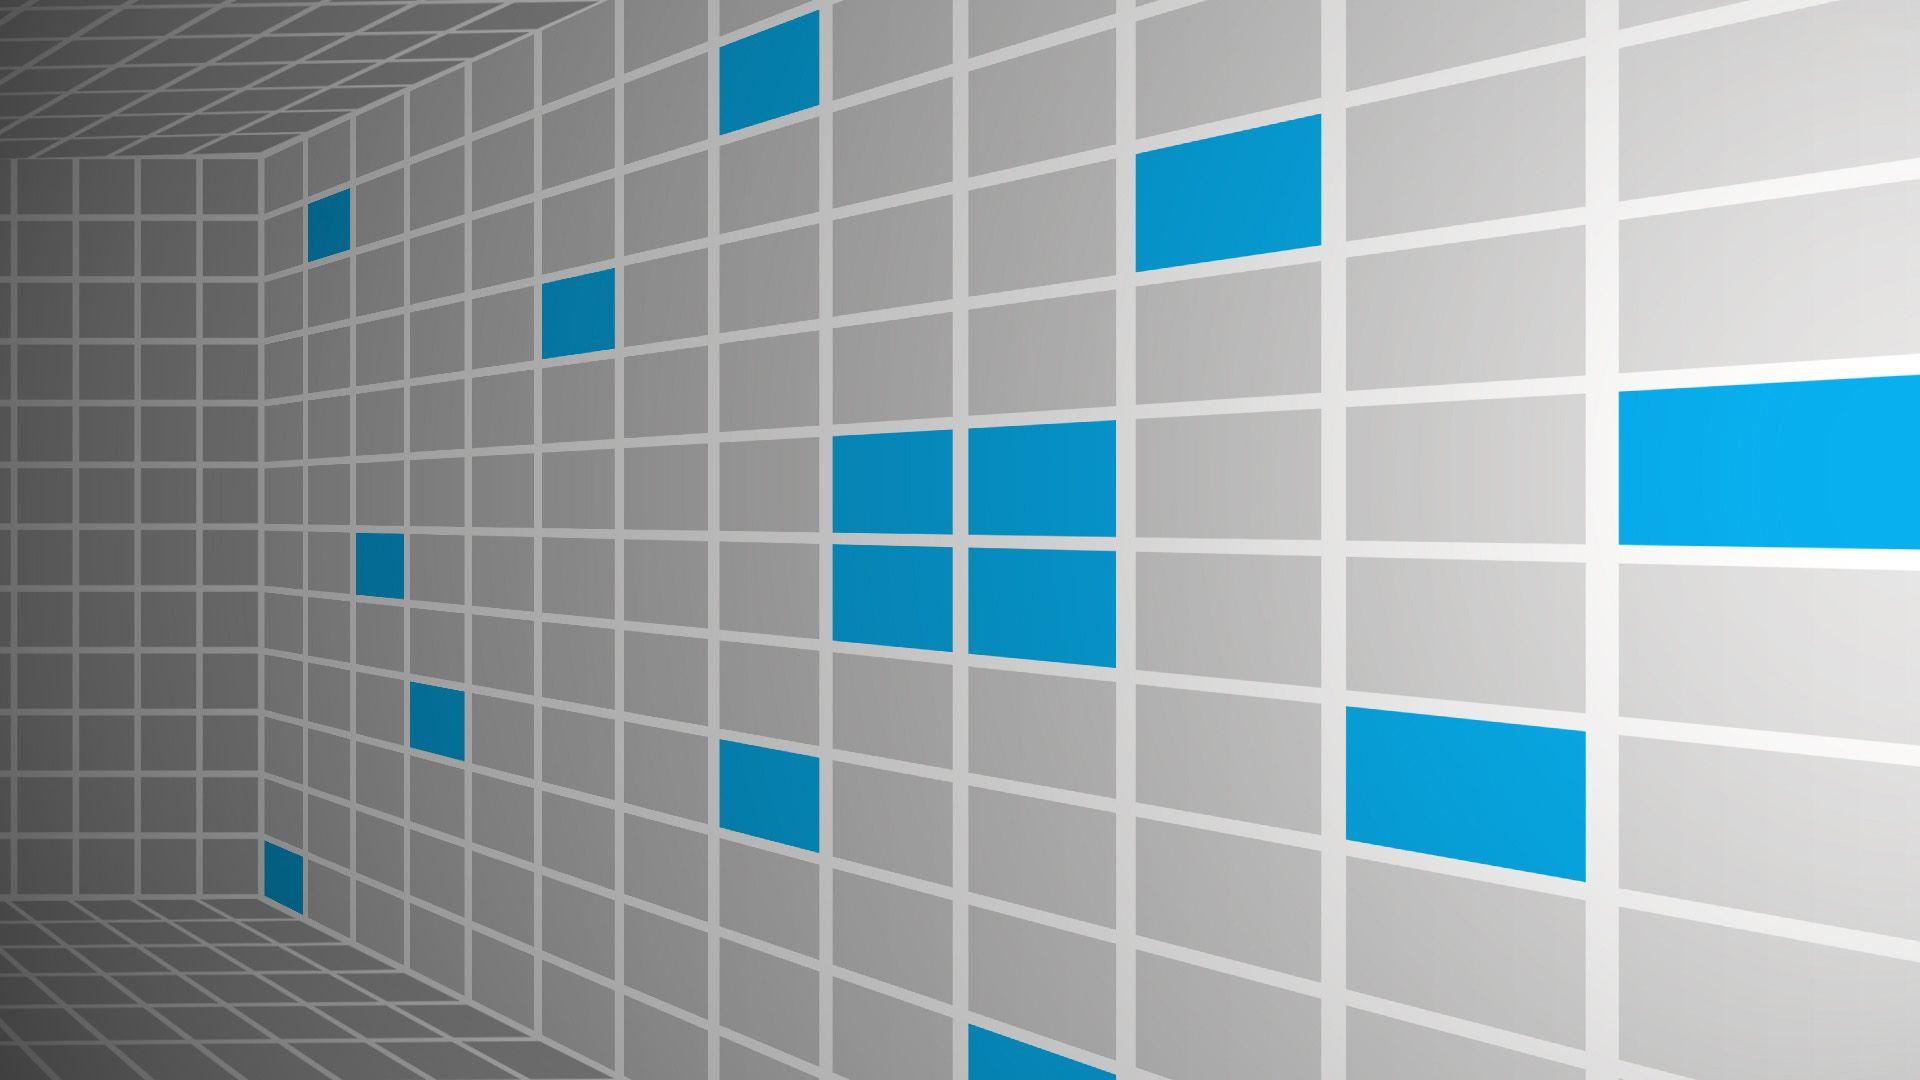 Wallpaper For > 3D Desktop Wallpaper For Windows 8